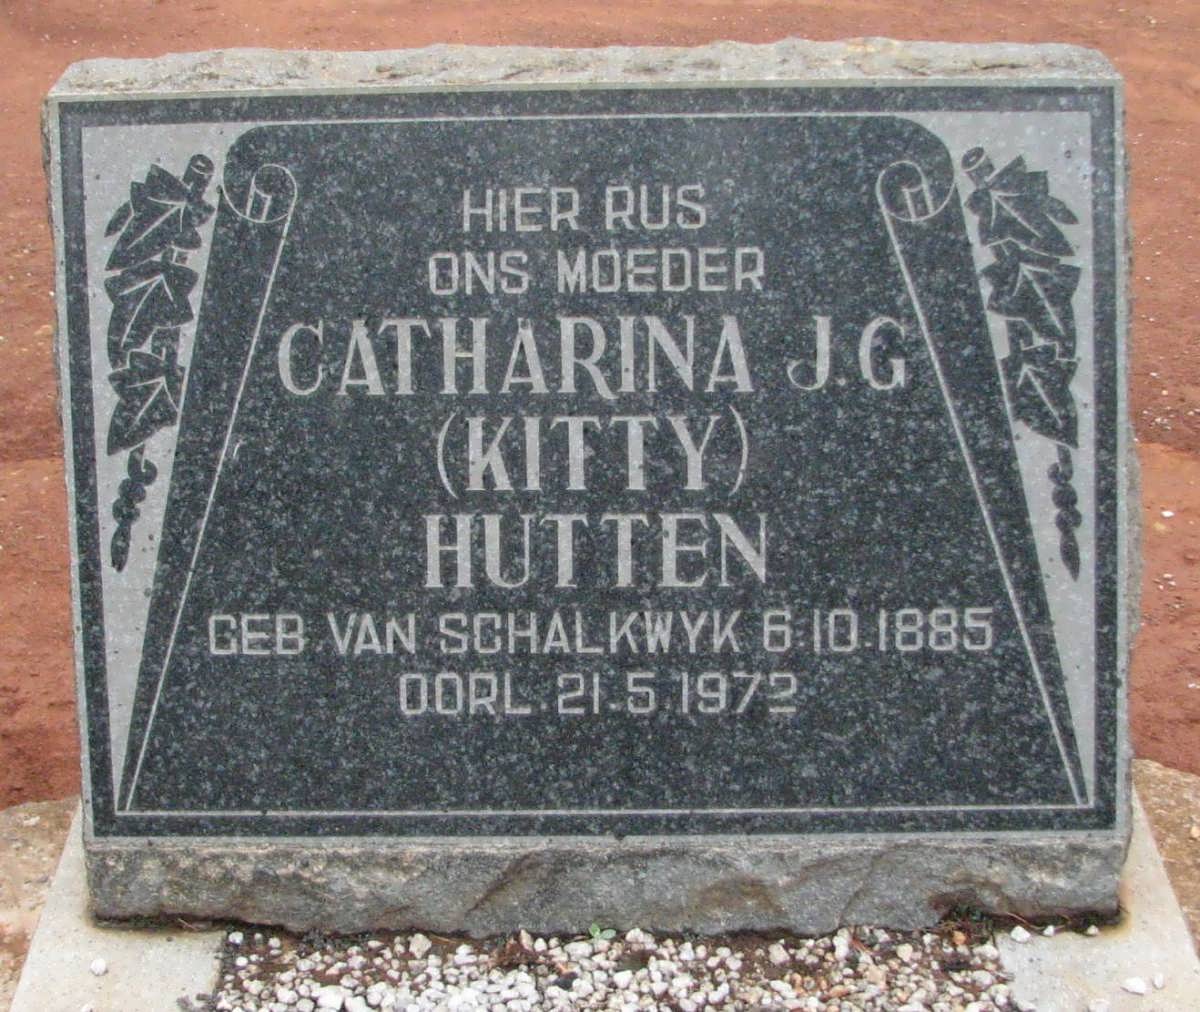 HUTTEN Catharina J.G. nee VAN SCHALKWYK 1885-1972